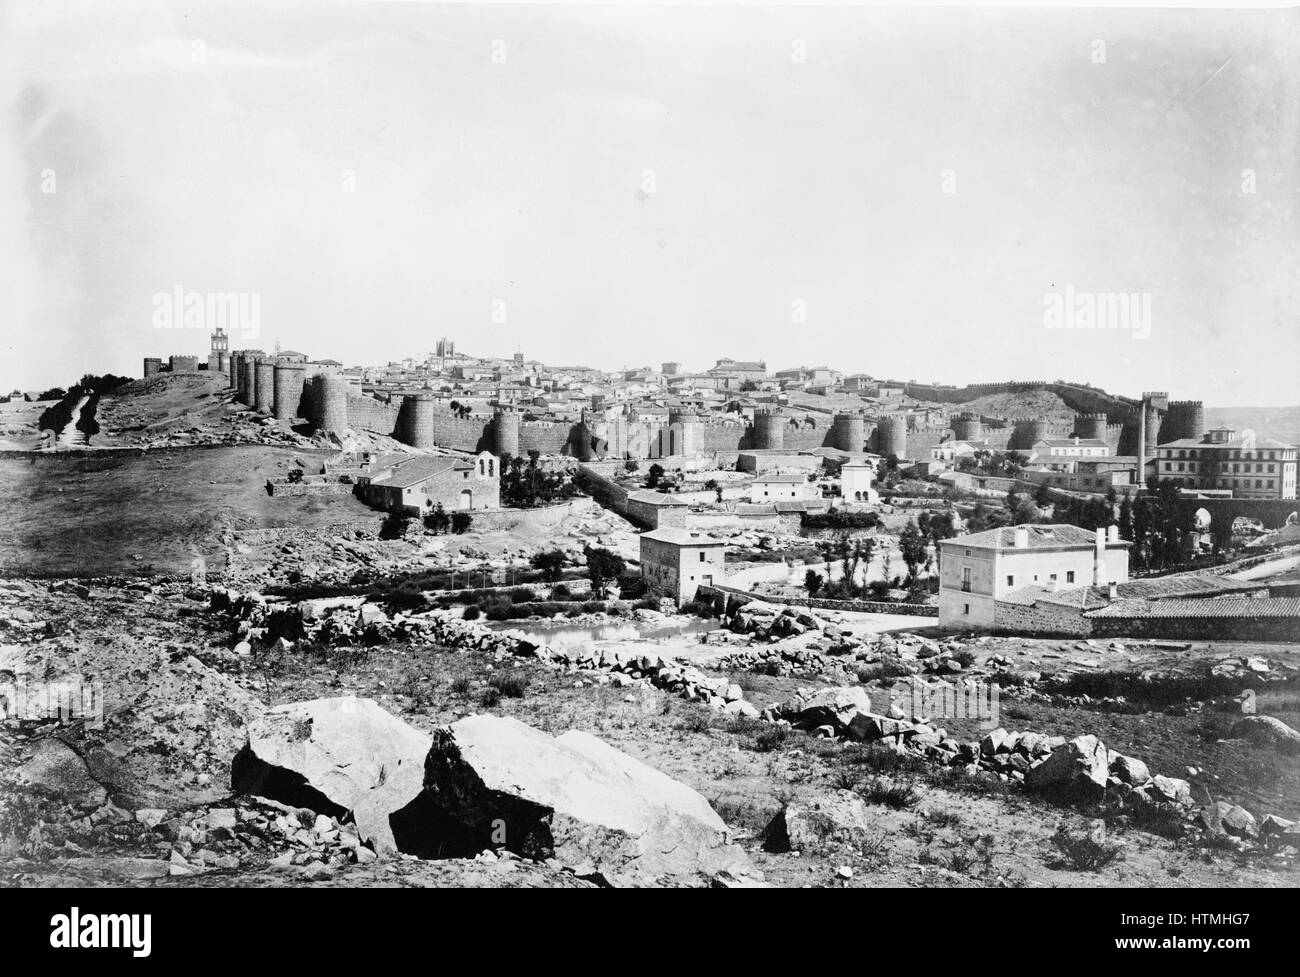 Voir d'Avila montrant mur autour de vieille ville. tirage photographique : albumen. [Entre 1860 et 1880] Banque D'Images